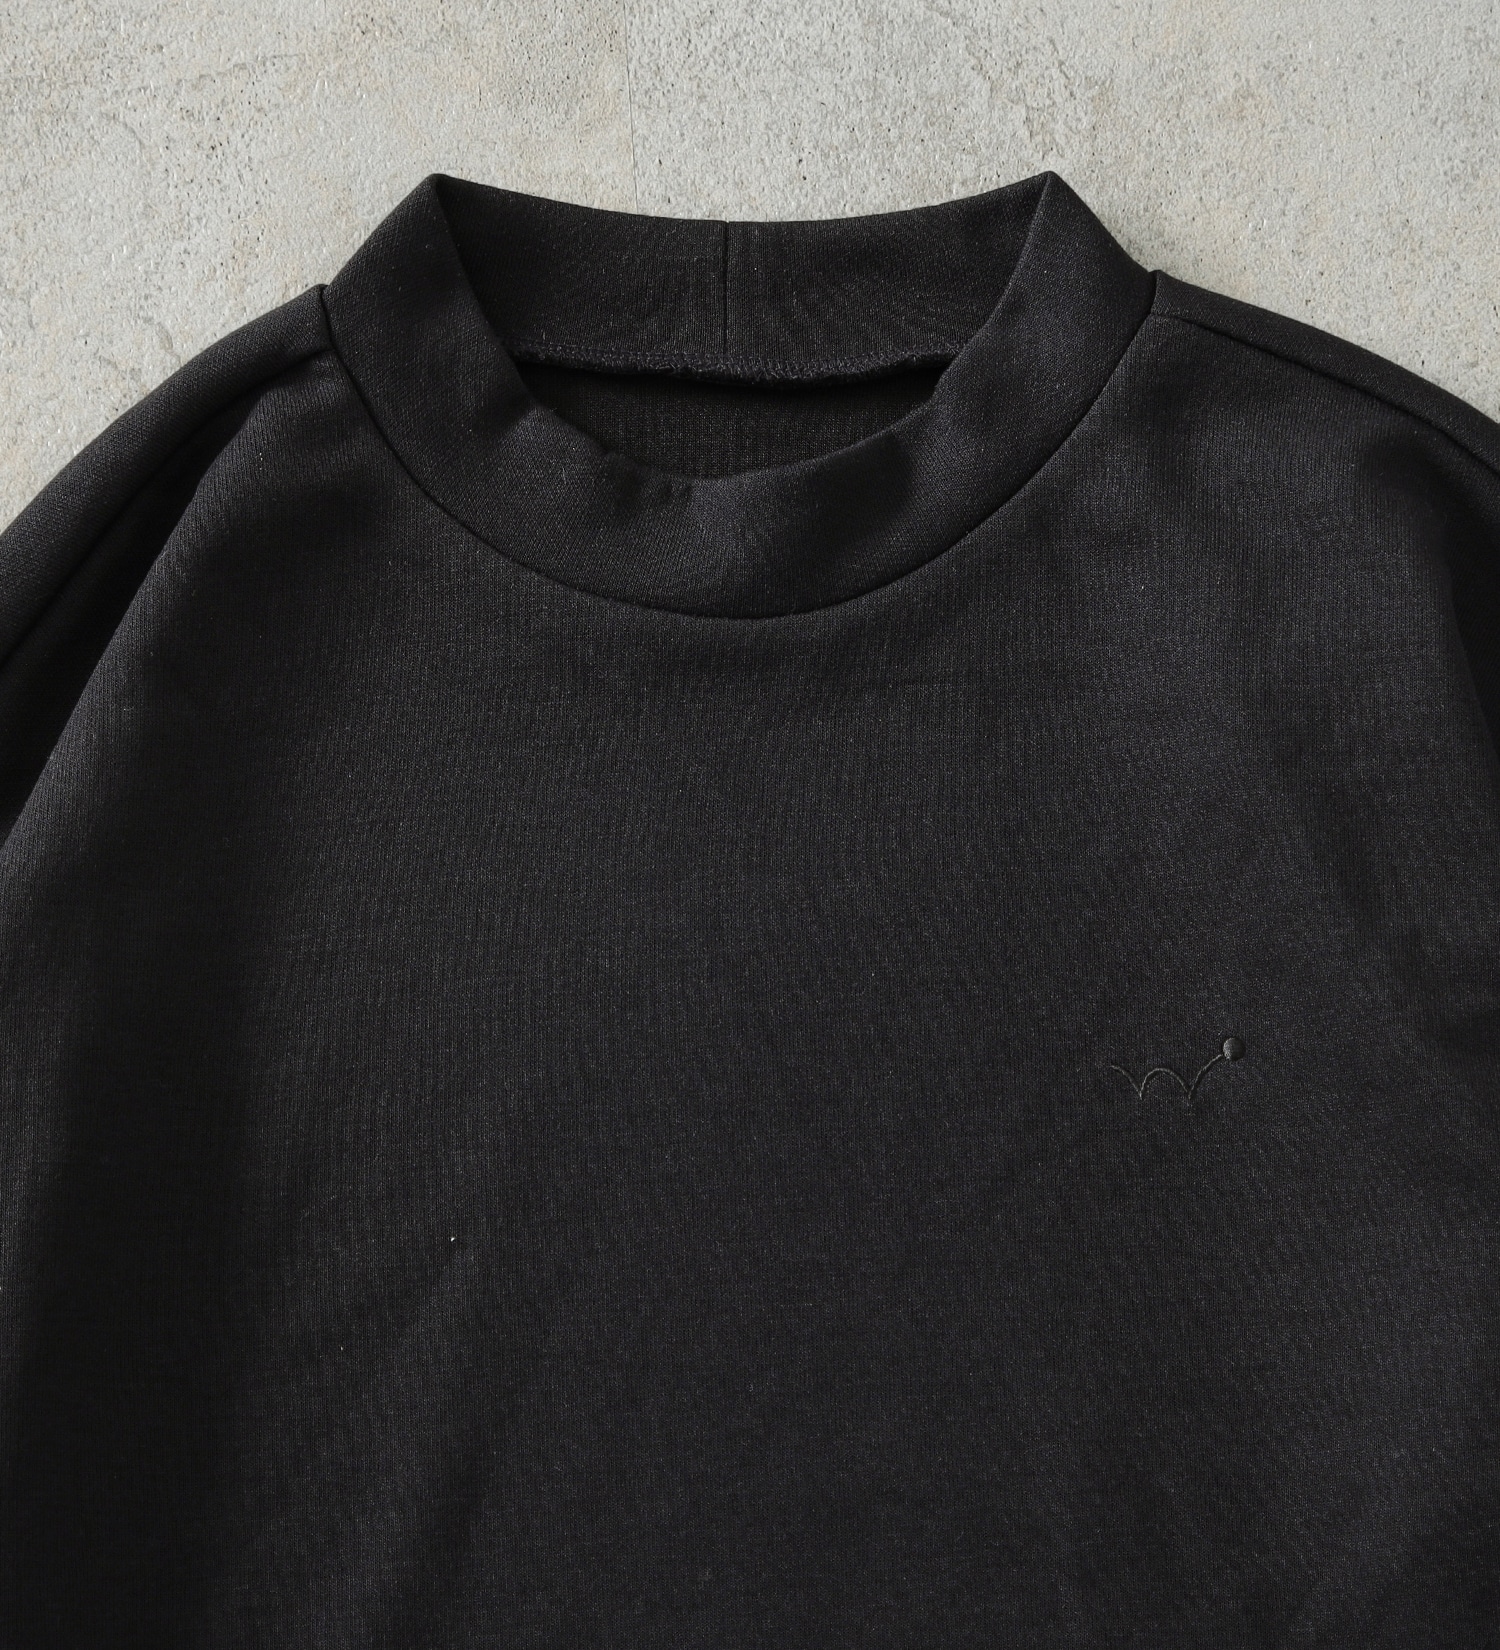 EDWIN(エドウイン)の【BLACKFRIDAY】EDWIN GOLF エドウイン ゴルフ モックネックTシャツ 長袖|トップス/Tシャツ/カットソー/メンズ|ブラック